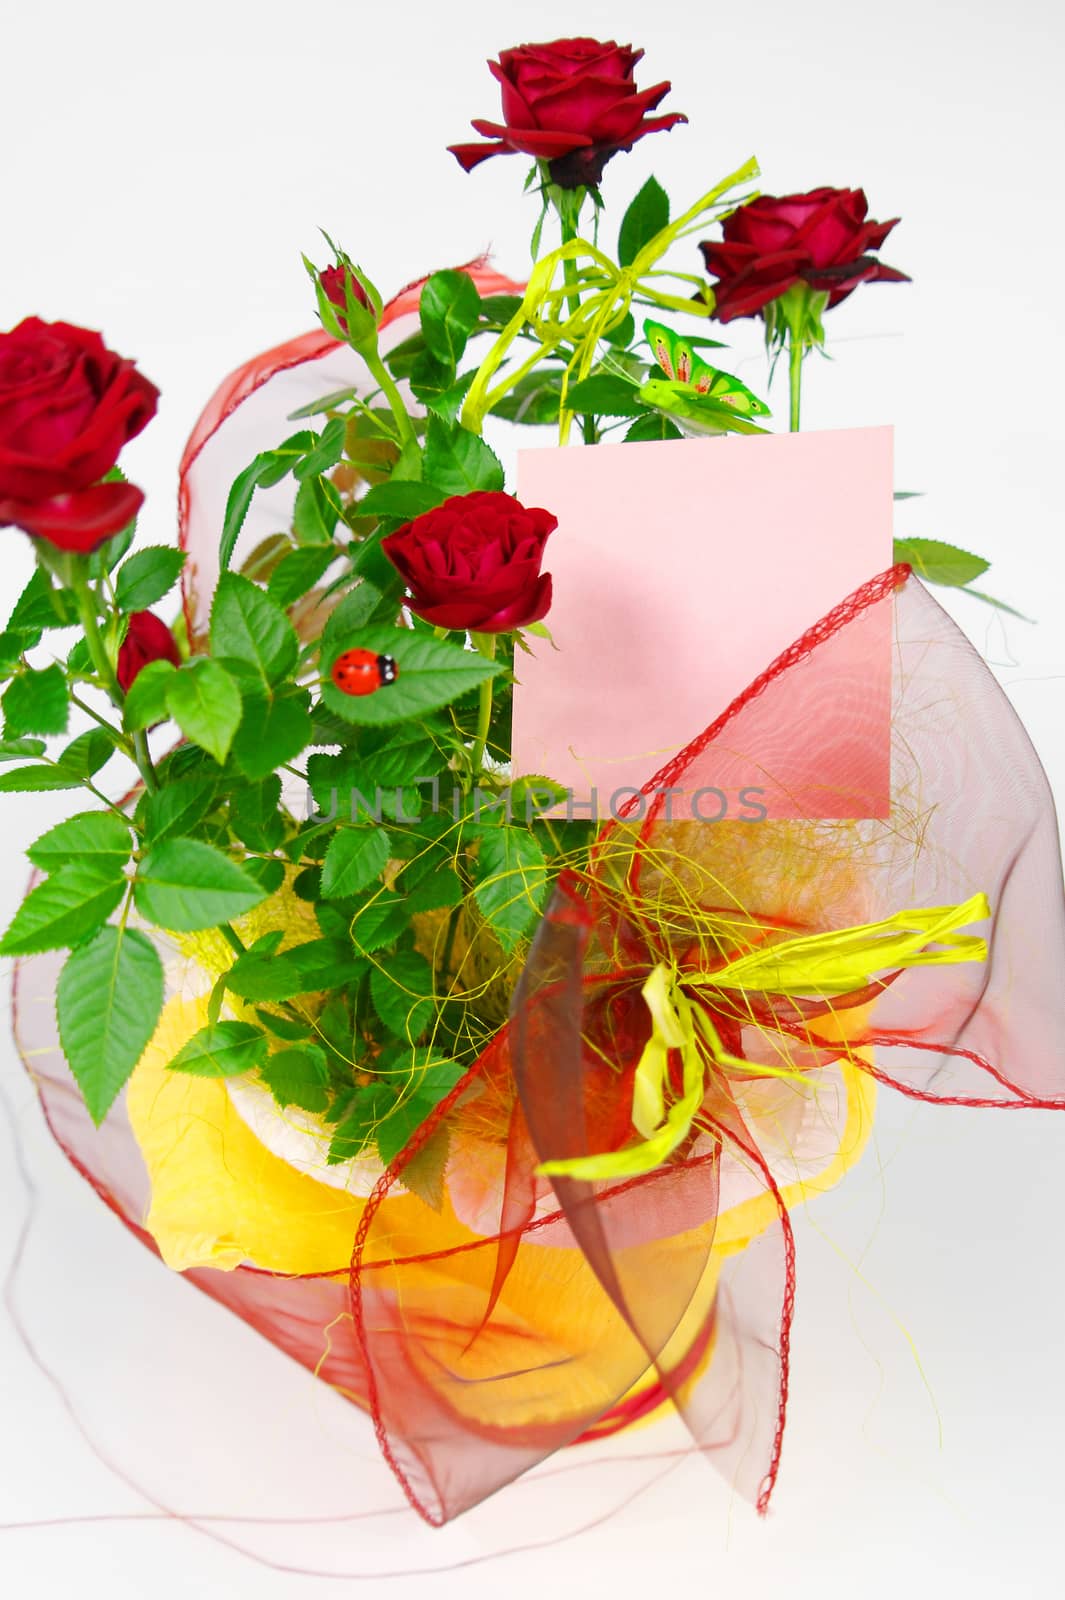 roses in flowerpot by zjyslav